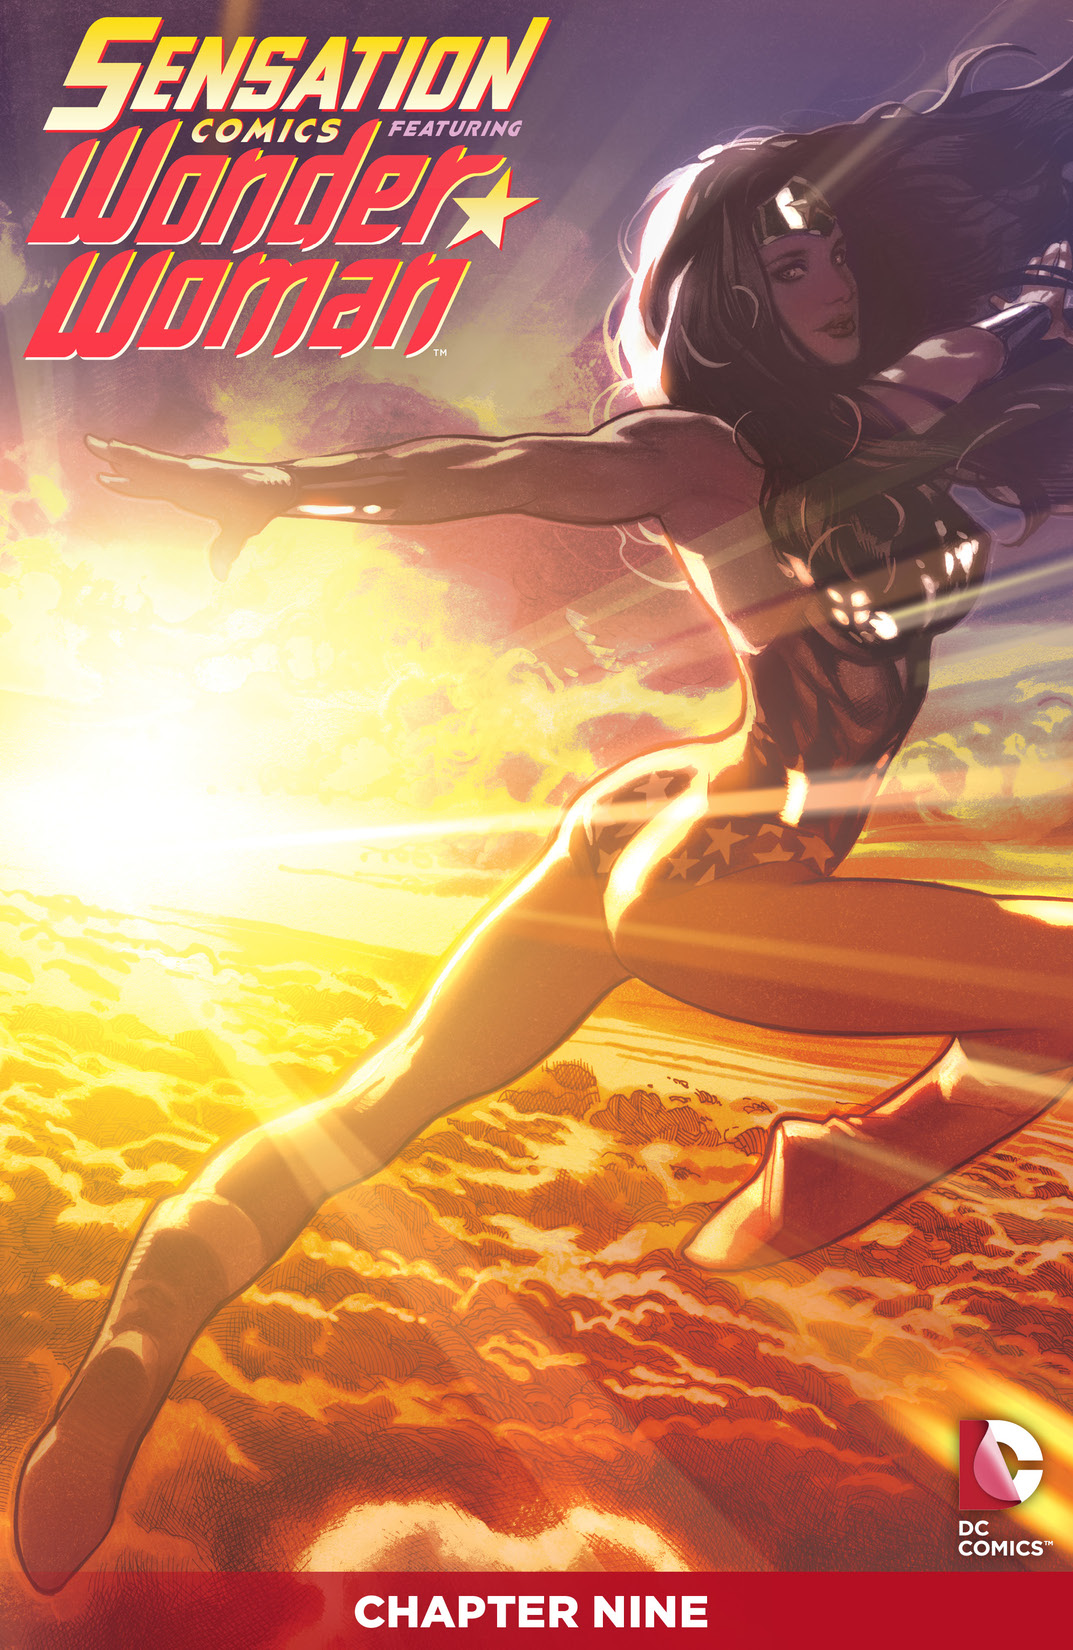 Sensation Comics Featuring Wonder Woman #9 preview images